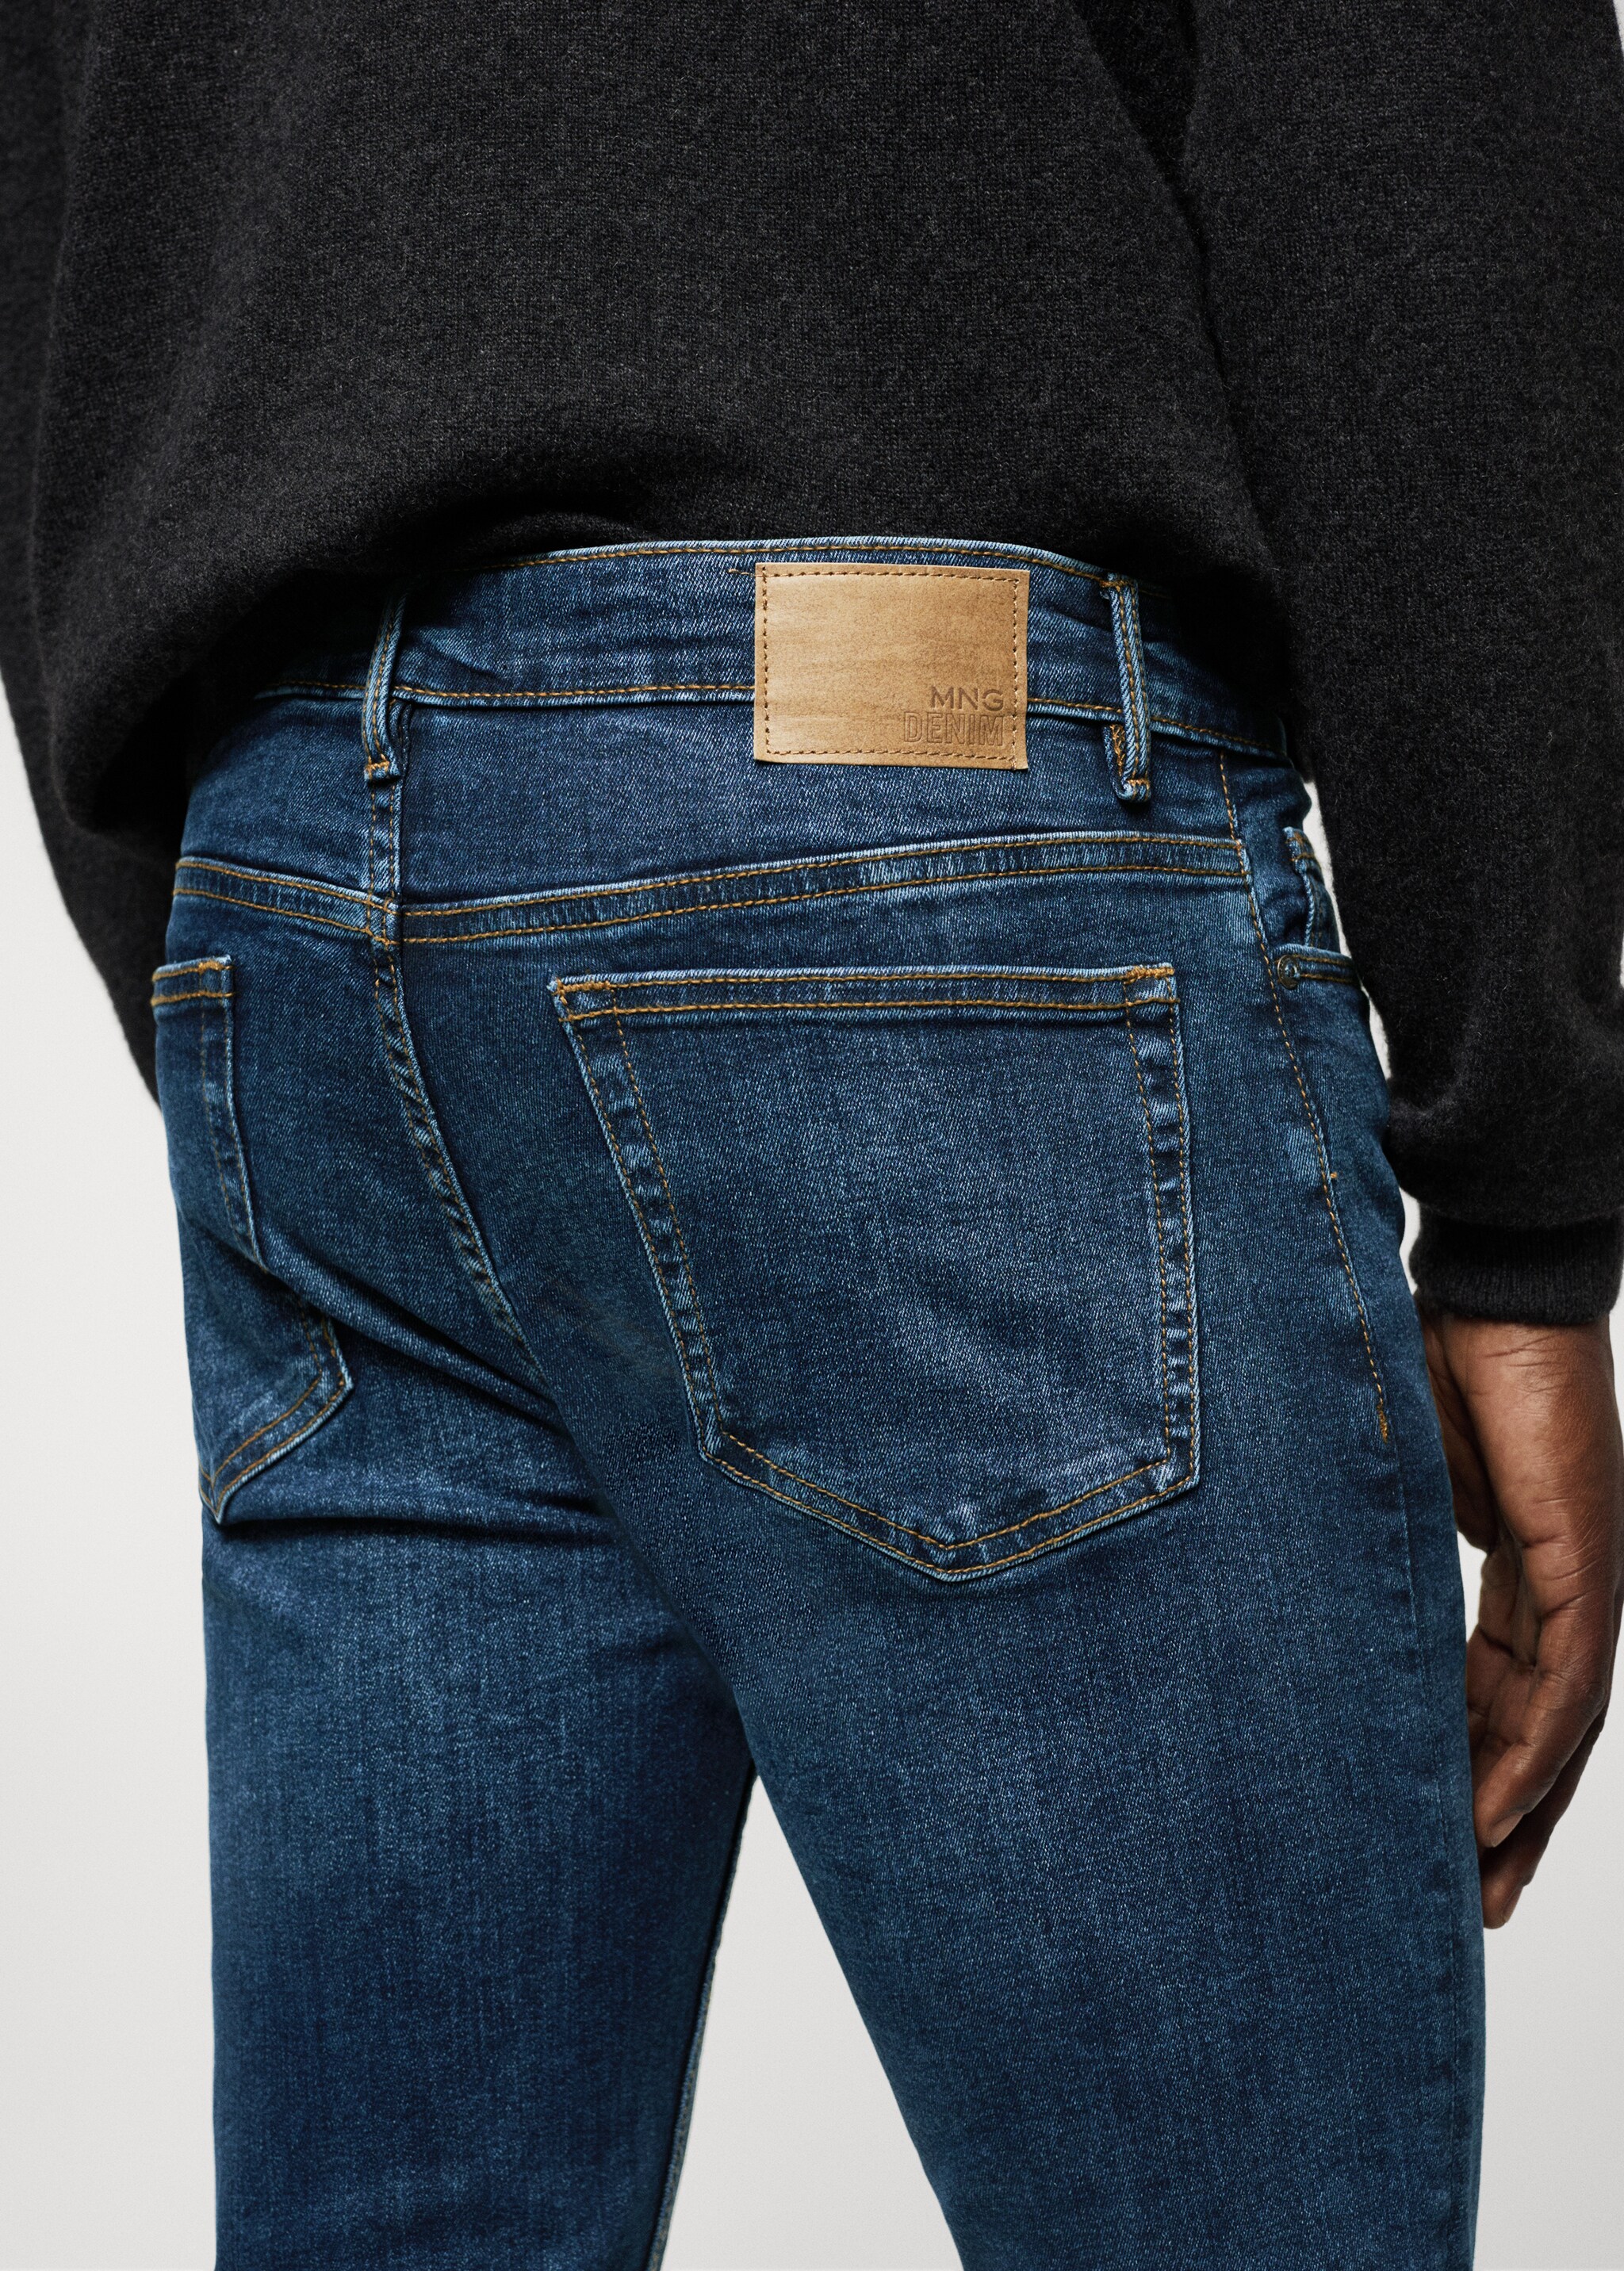 Jeans Jude skinny fit - Detalle del artículo 6